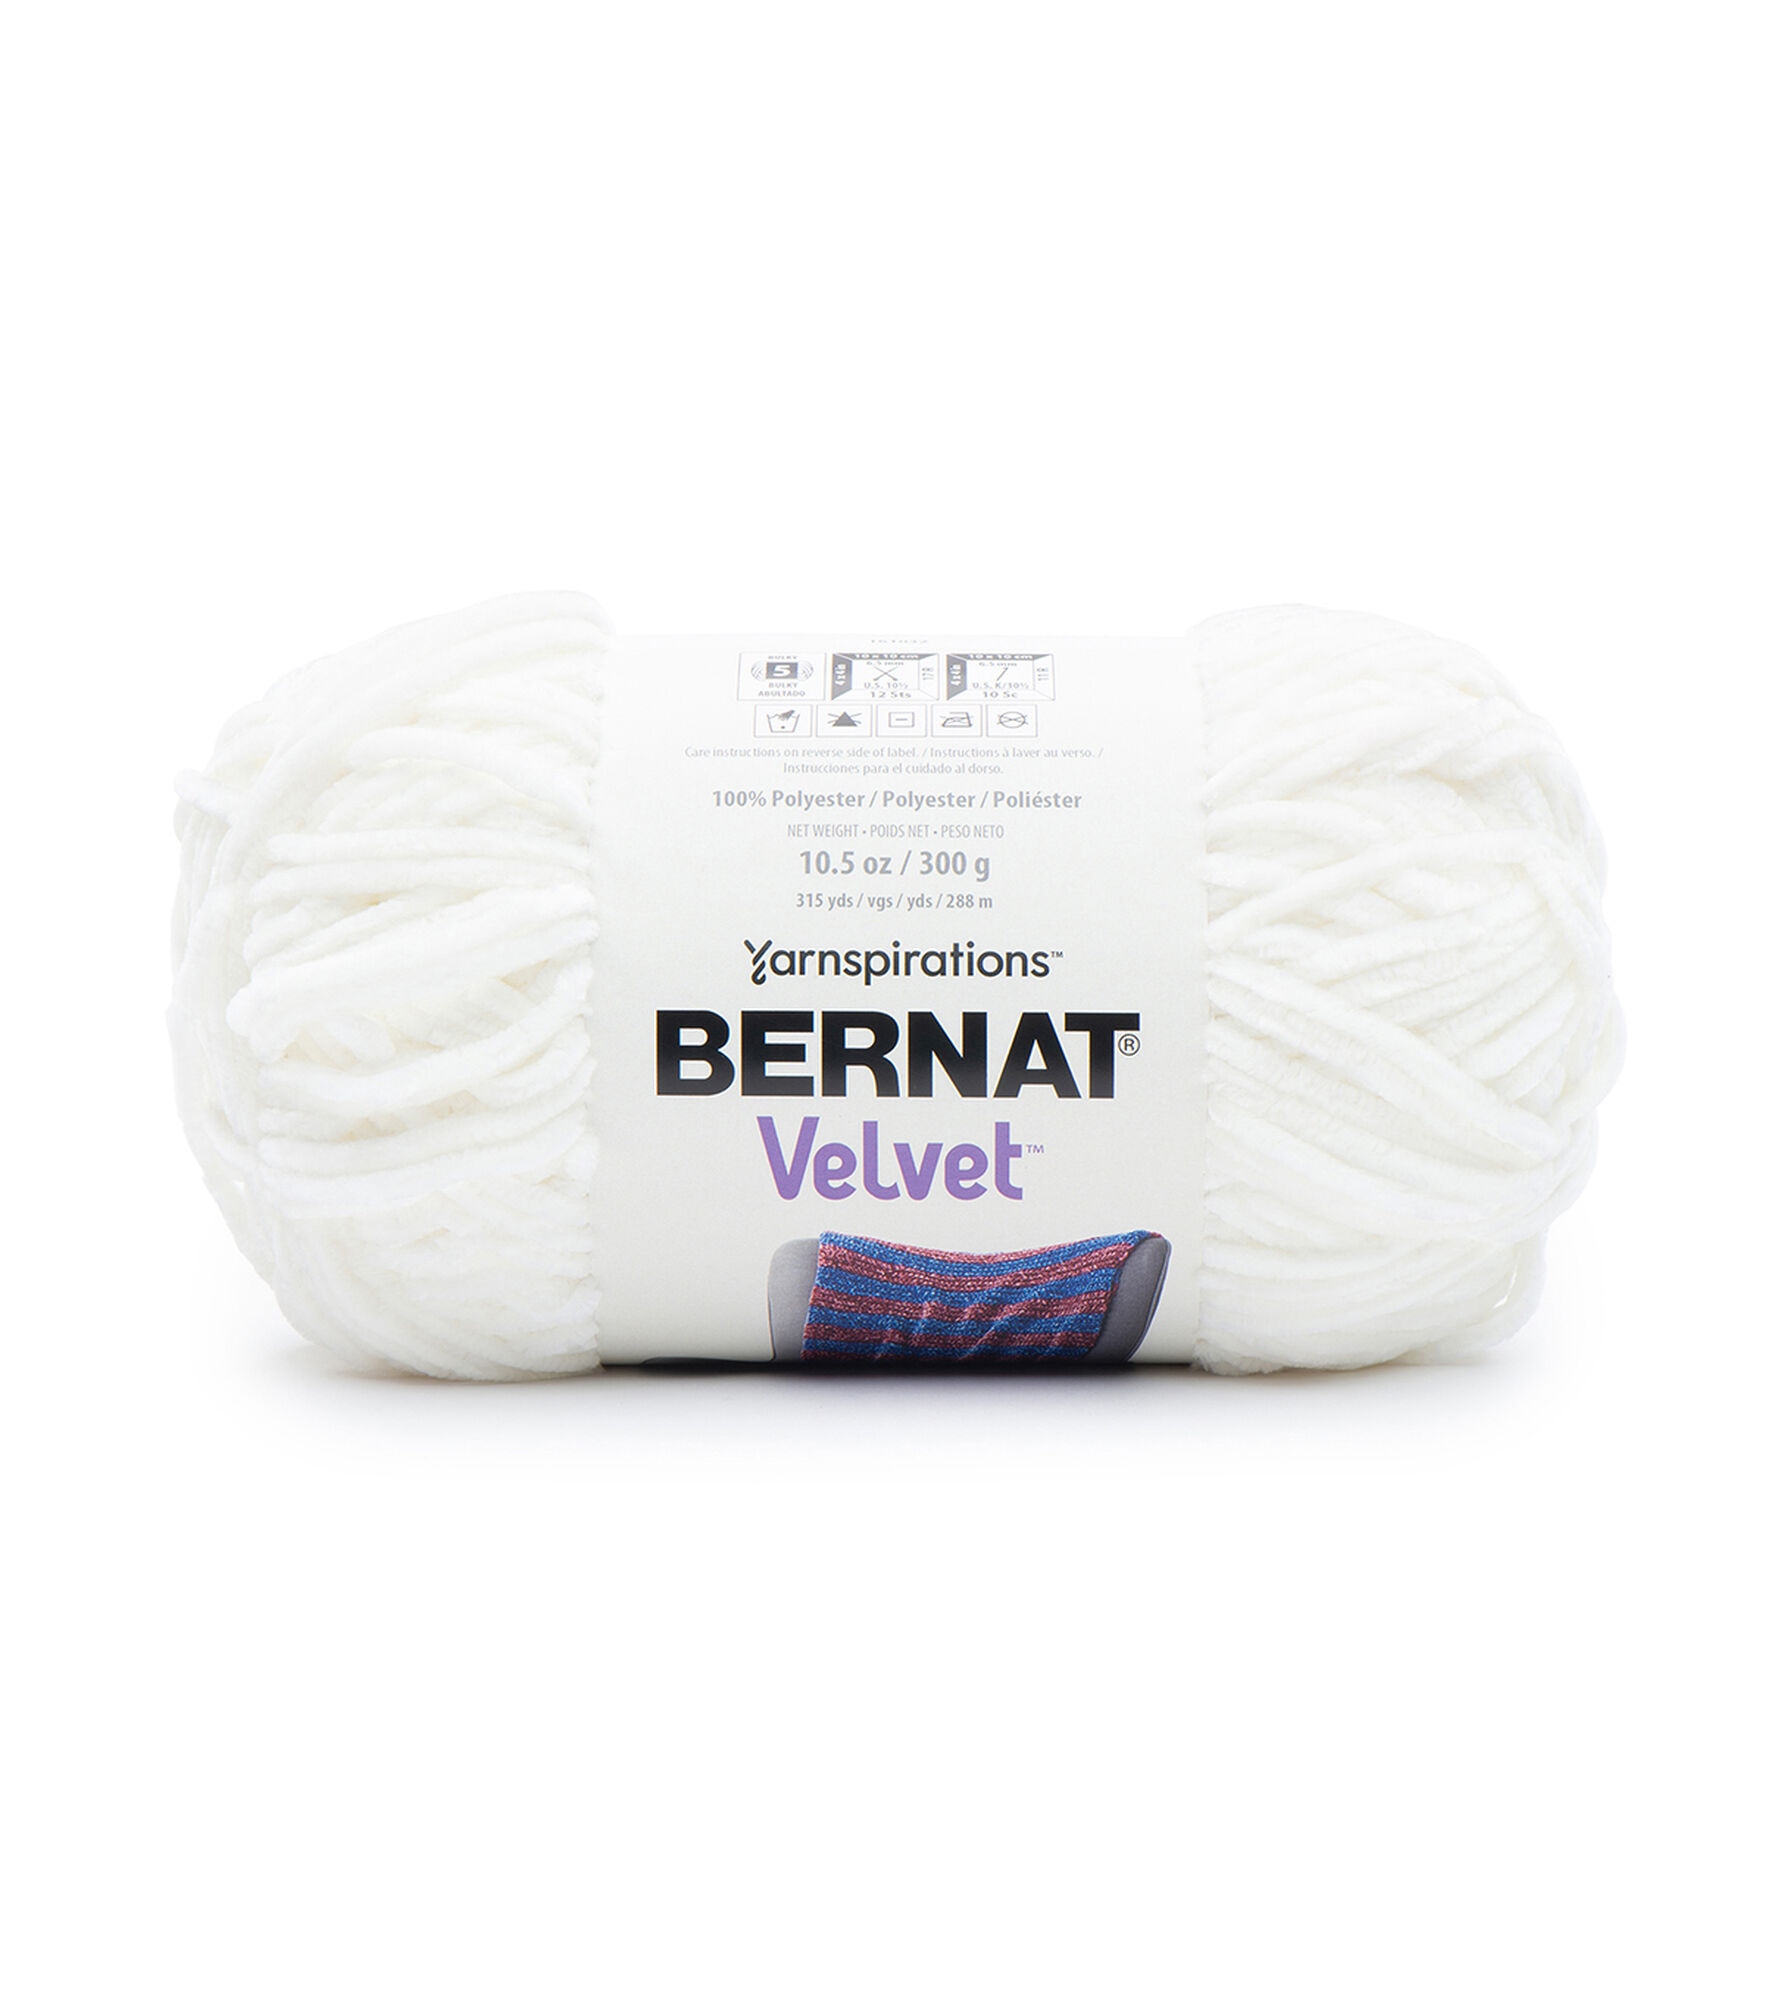 Bernat Crushed Velvet Yarn : Target